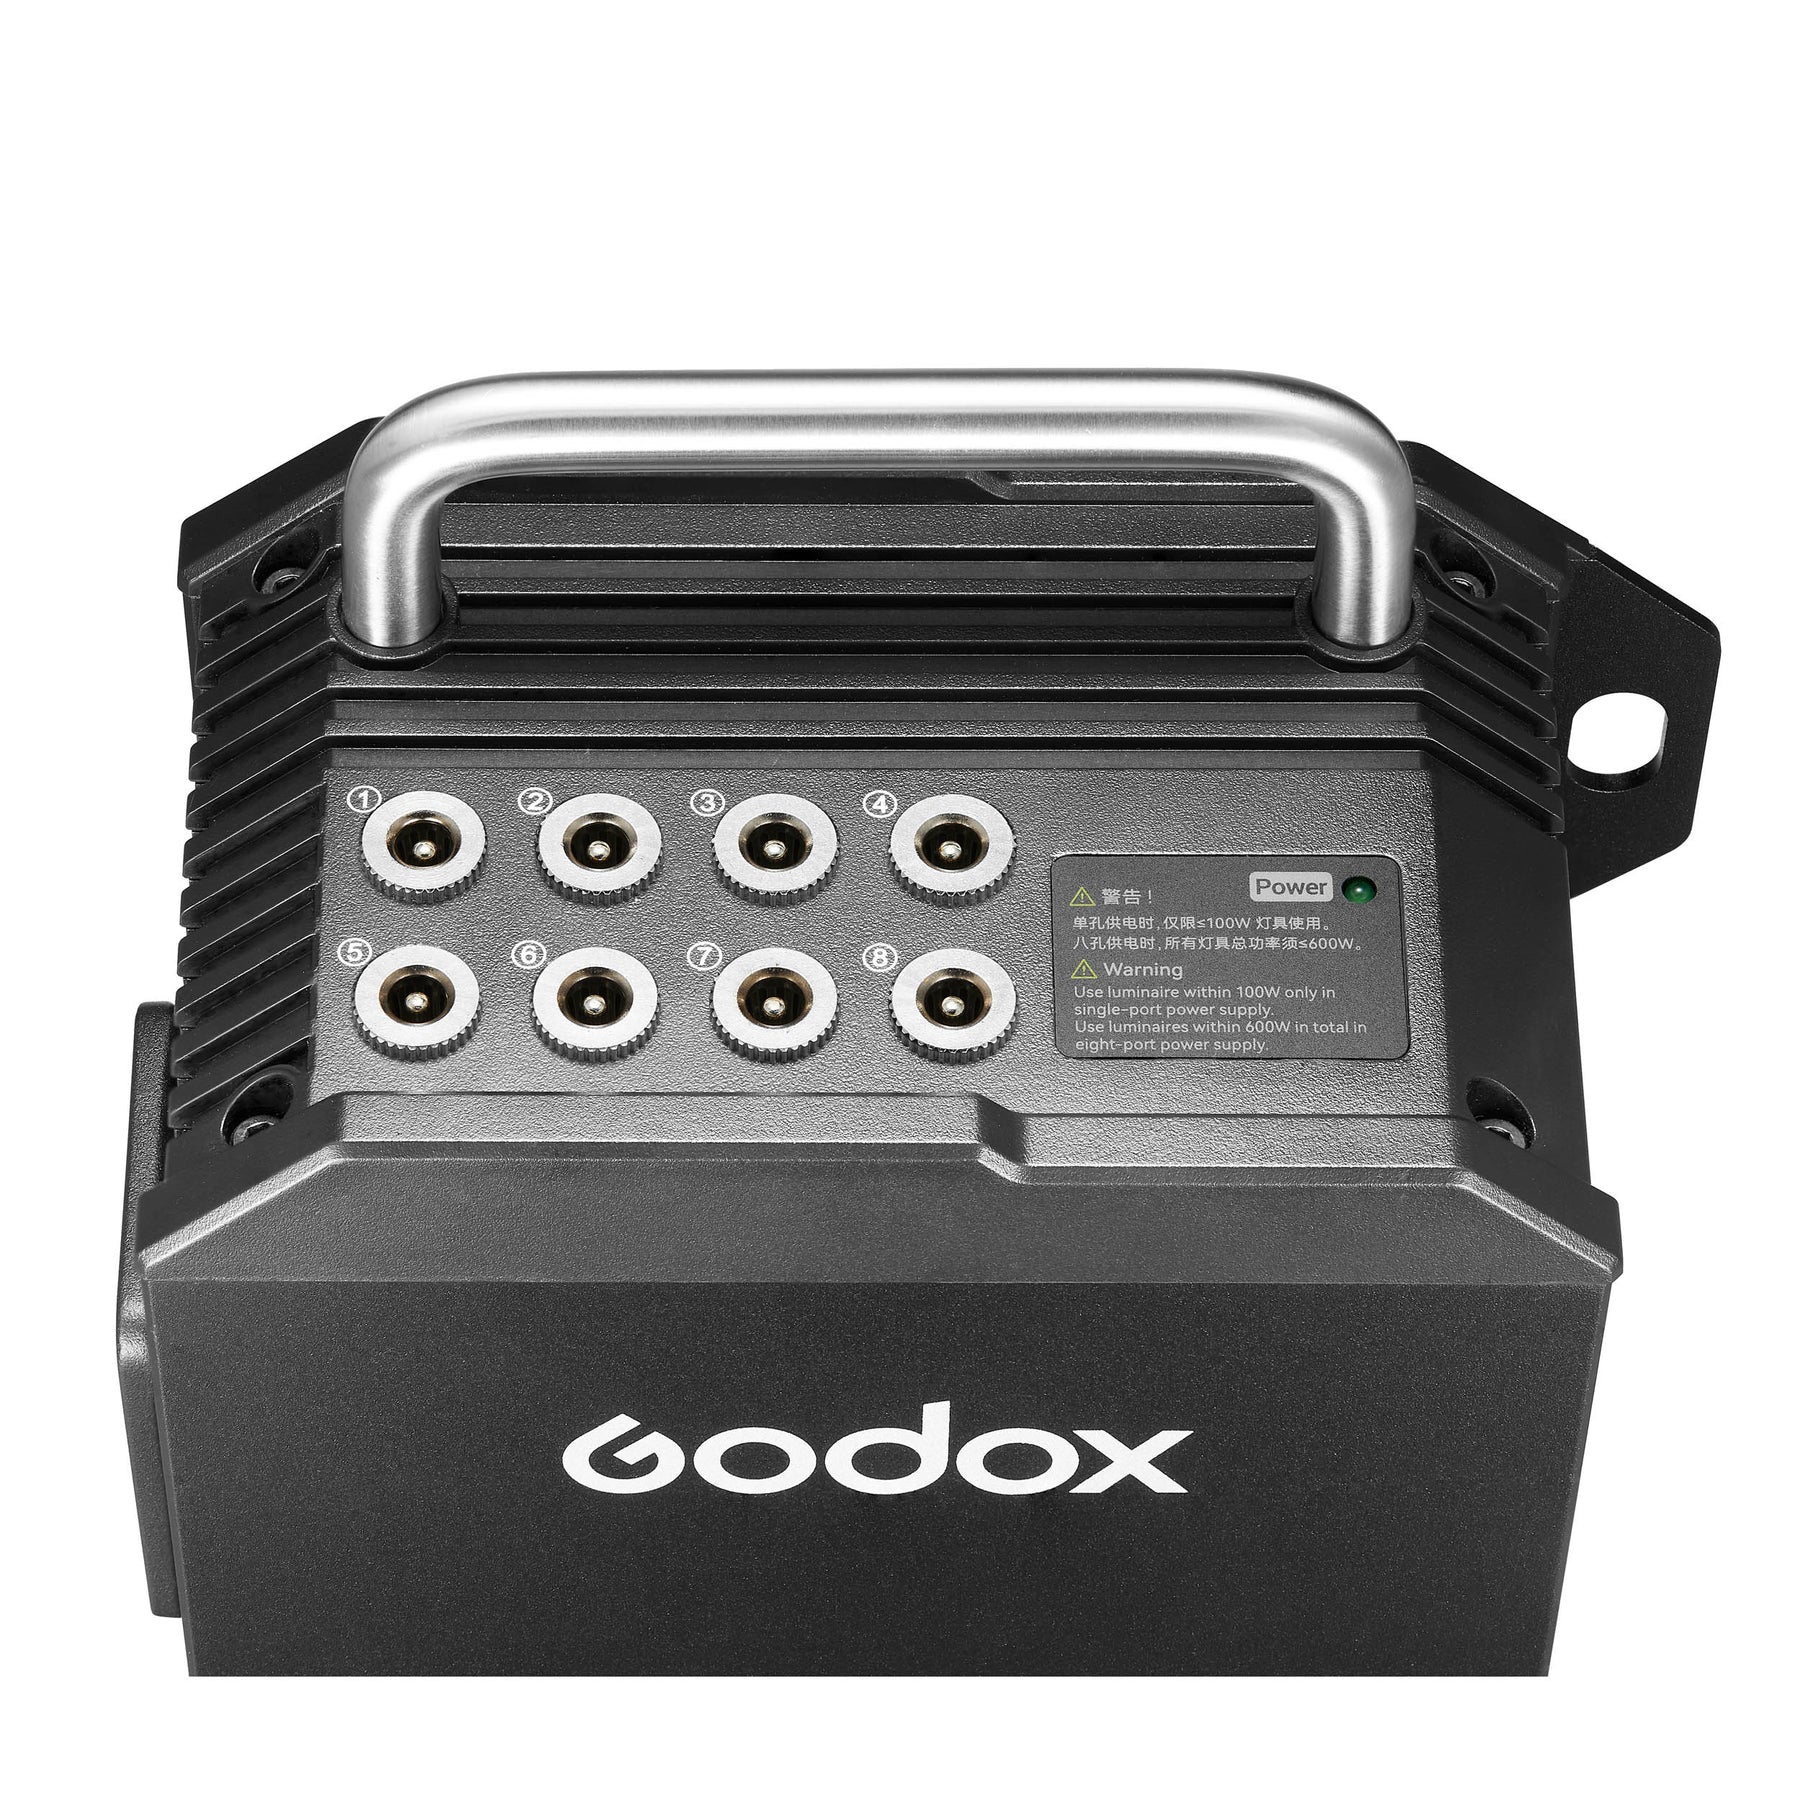     Godox Knowled TP4R-K8   Ultra-mart